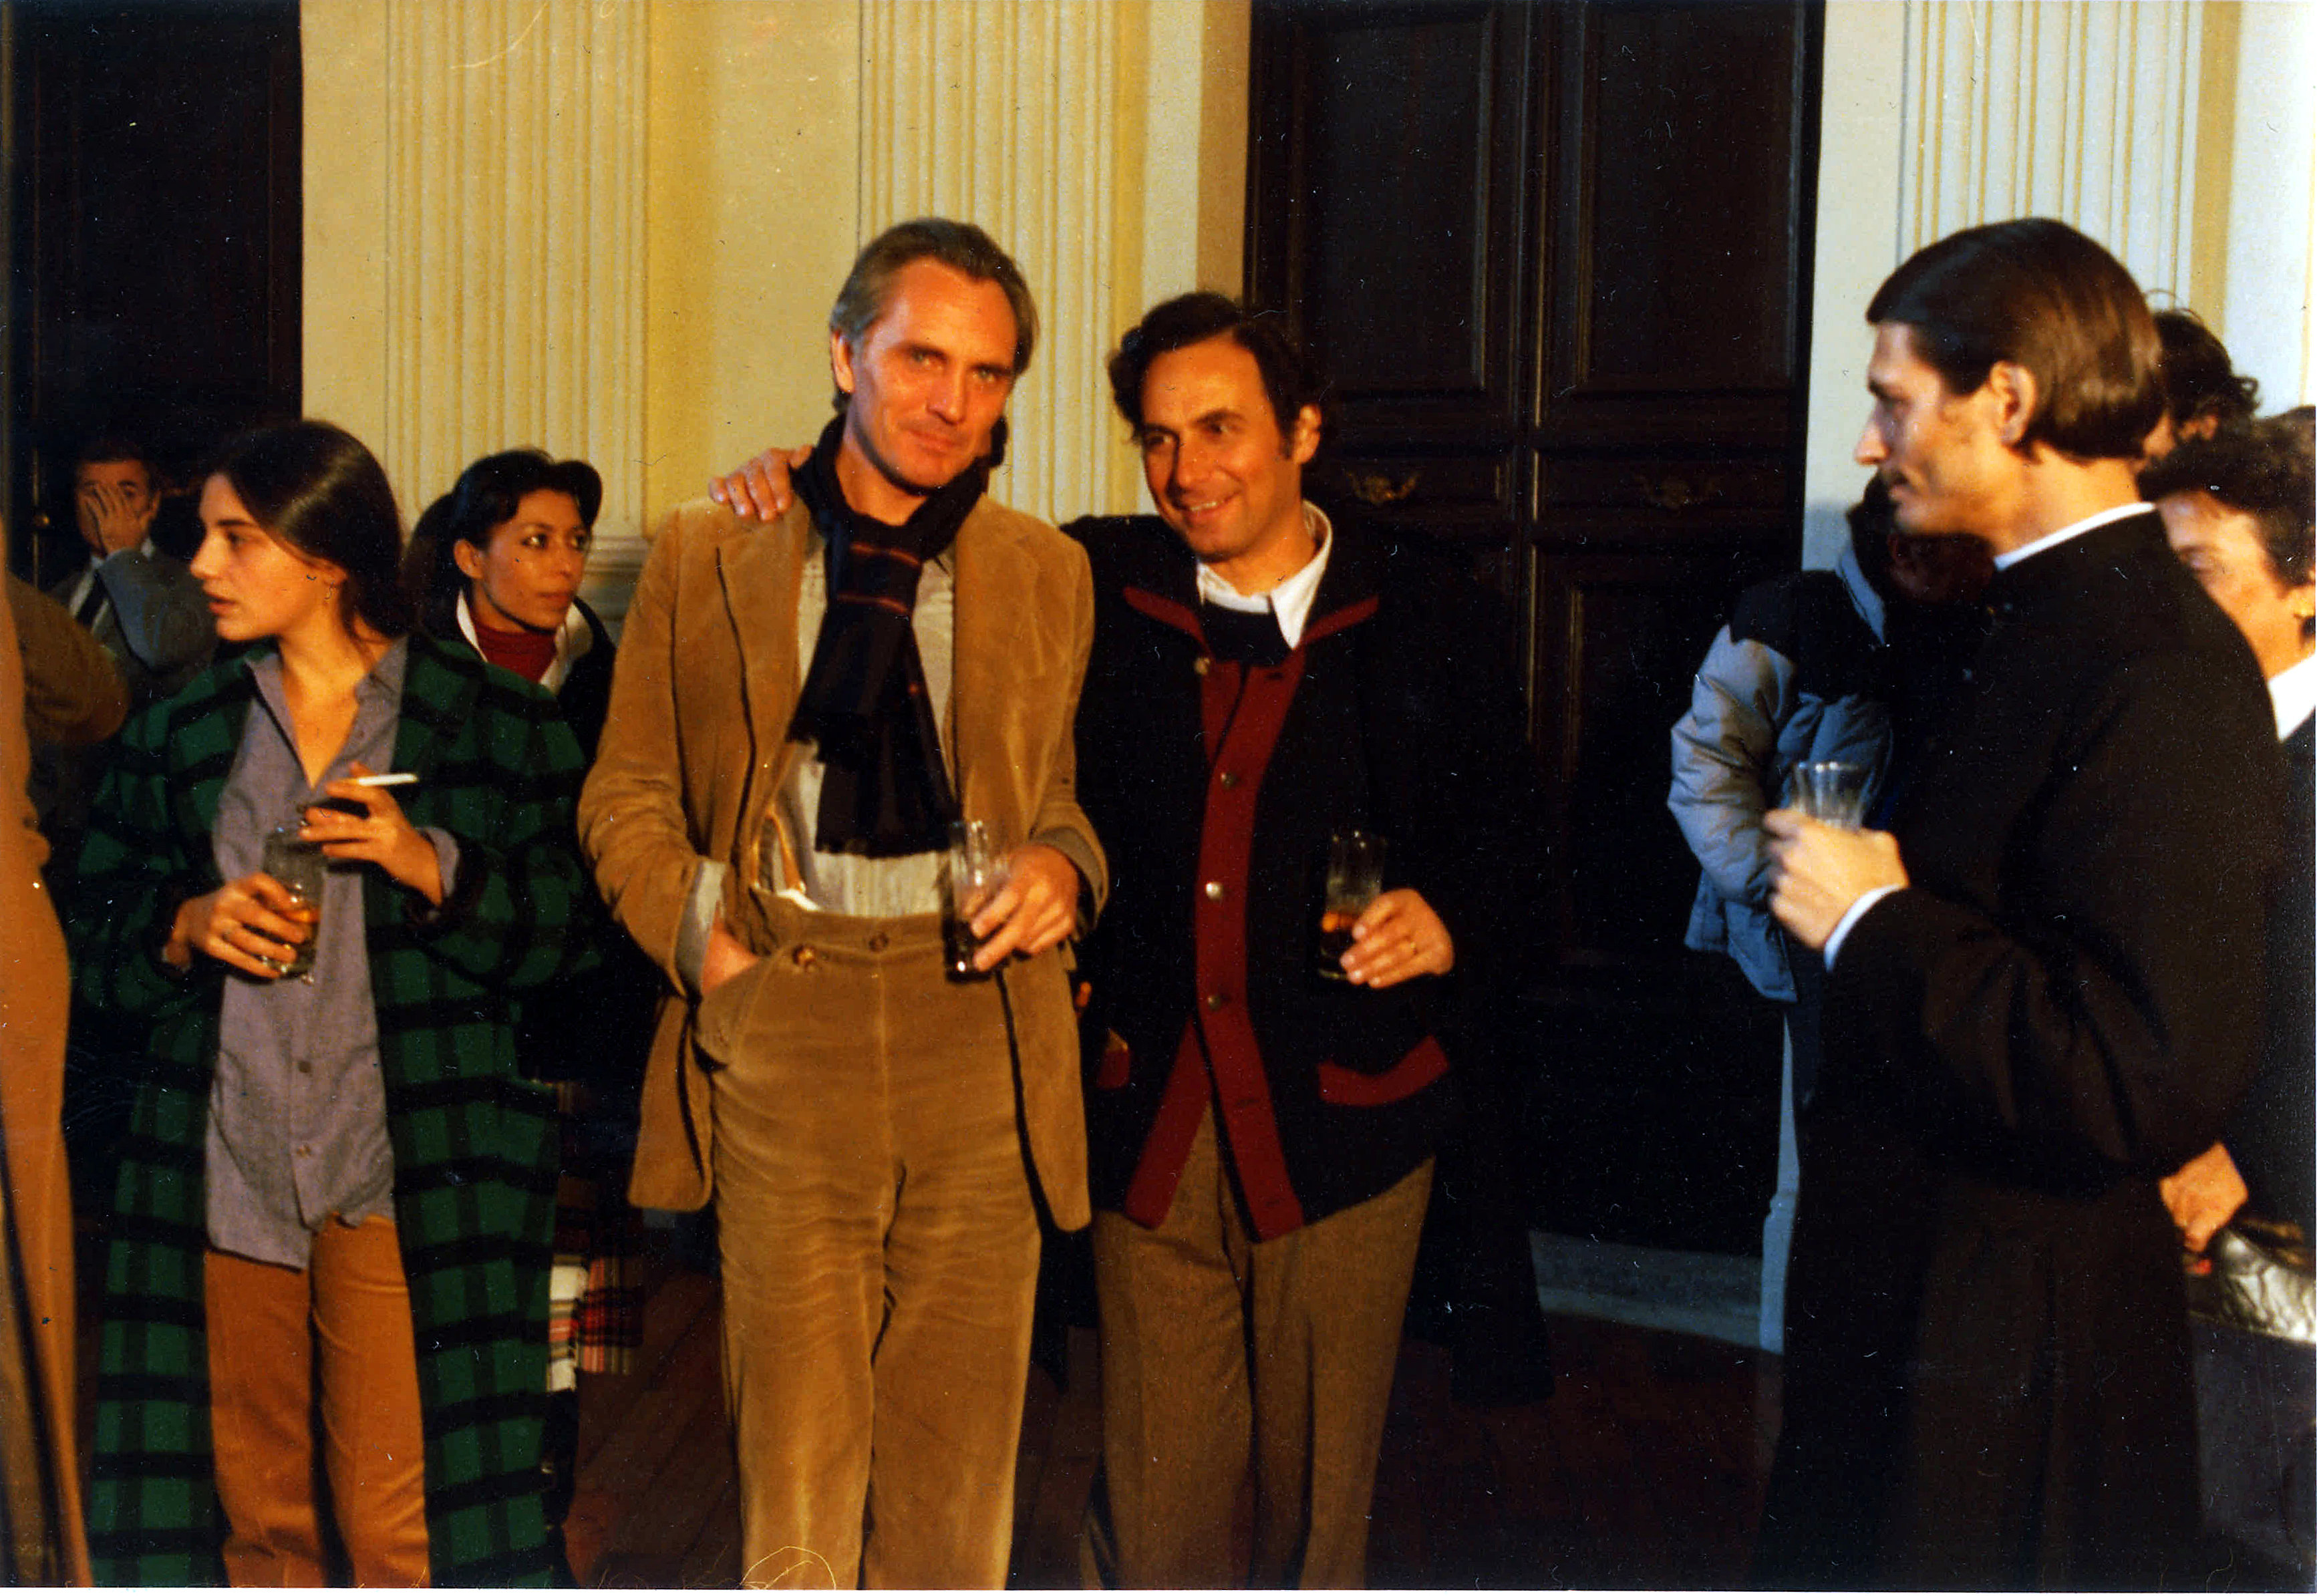 From left: Paula Molina, Terence Stamp, Marcello Aliprandi, Fabrizio Bentivoglio (on the set).